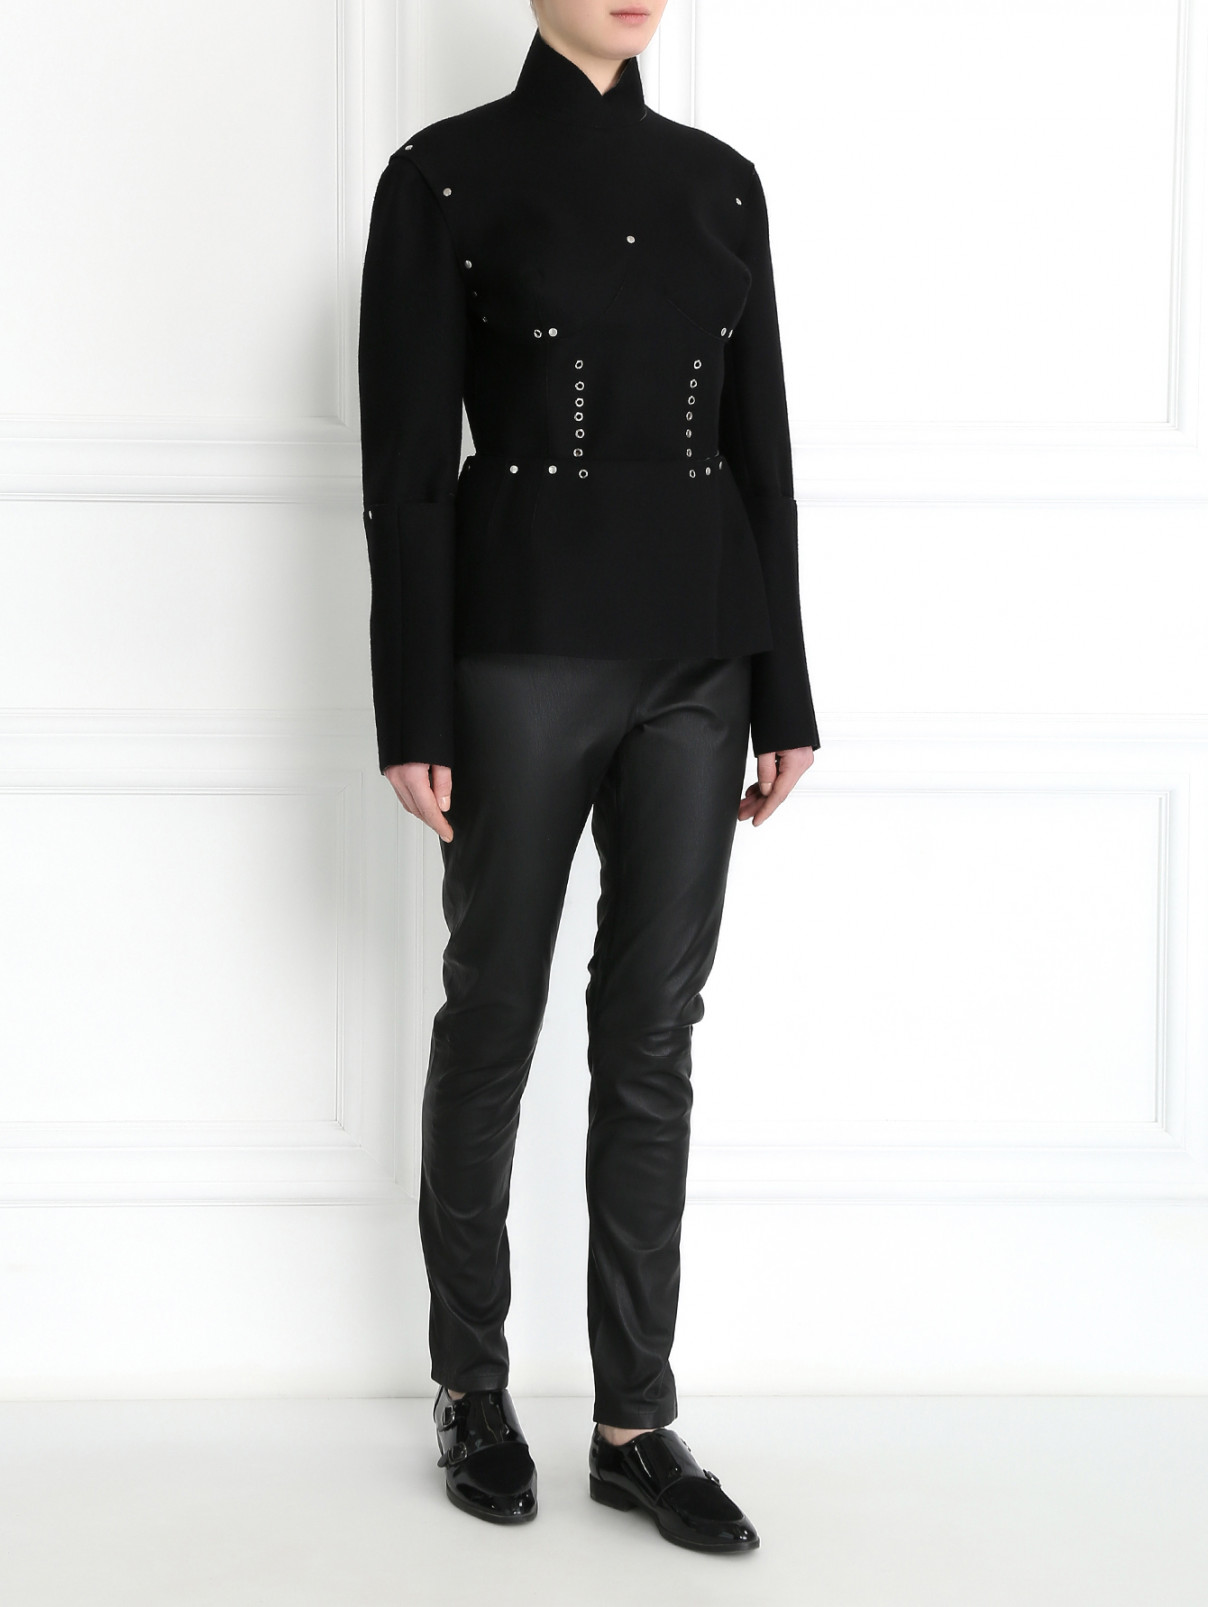 Топ из шерсти с отстегивающимися рукавами и баской Jean Paul Gaultier  –  Модель Общий вид  – Цвет:  Черный